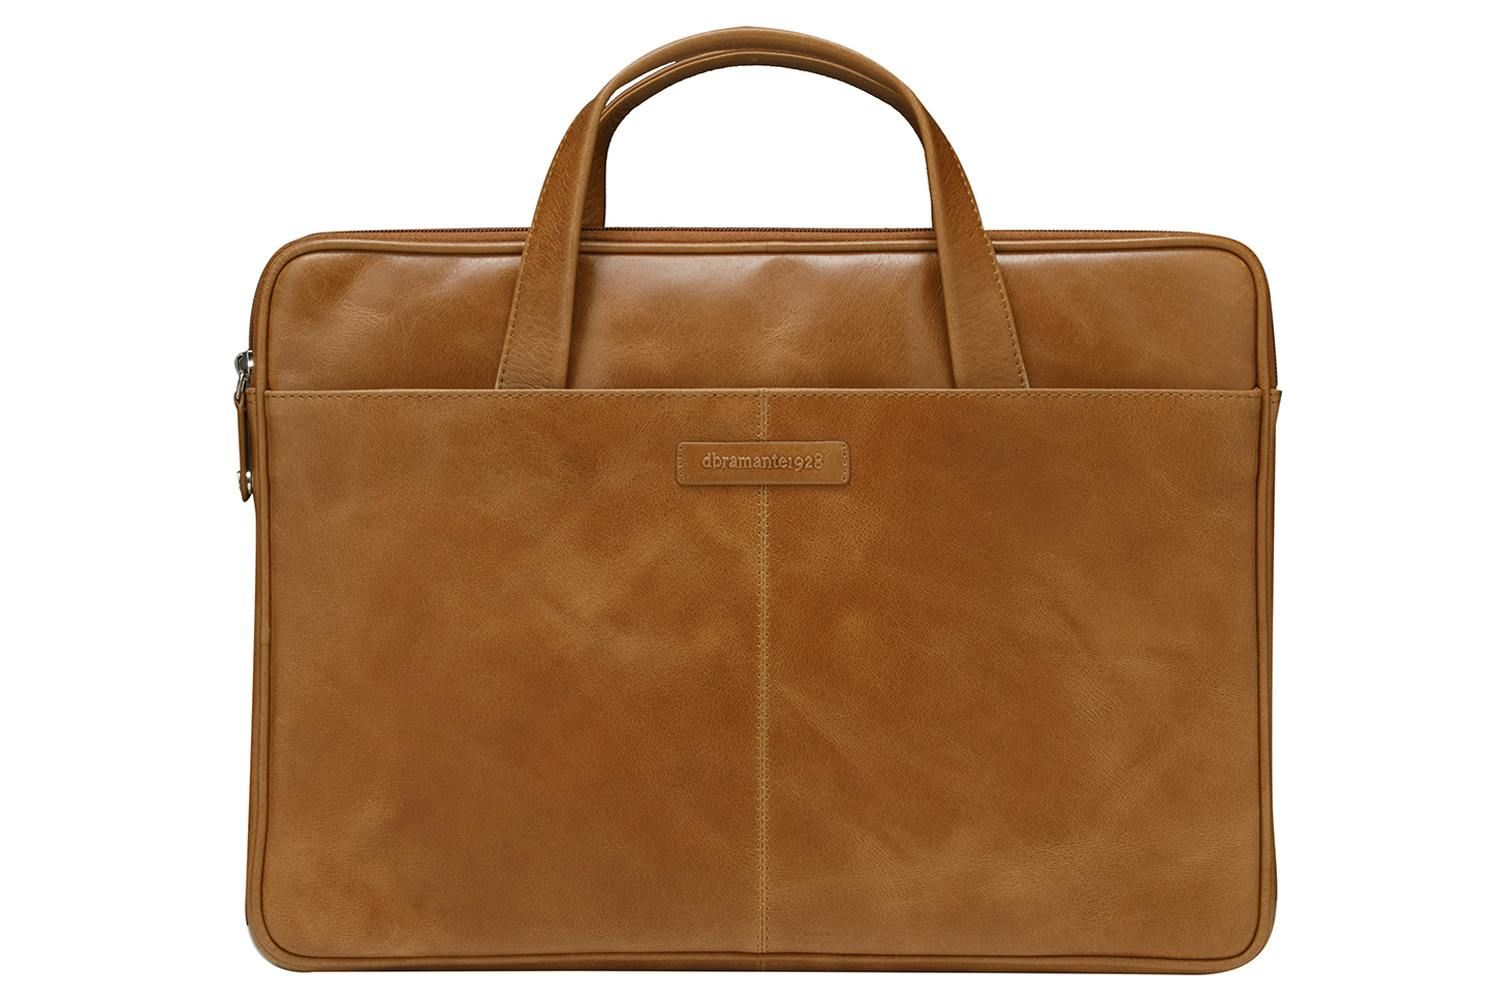 Dbramante1928 Silkeborg 15" Laptop Bag | Golden Tan